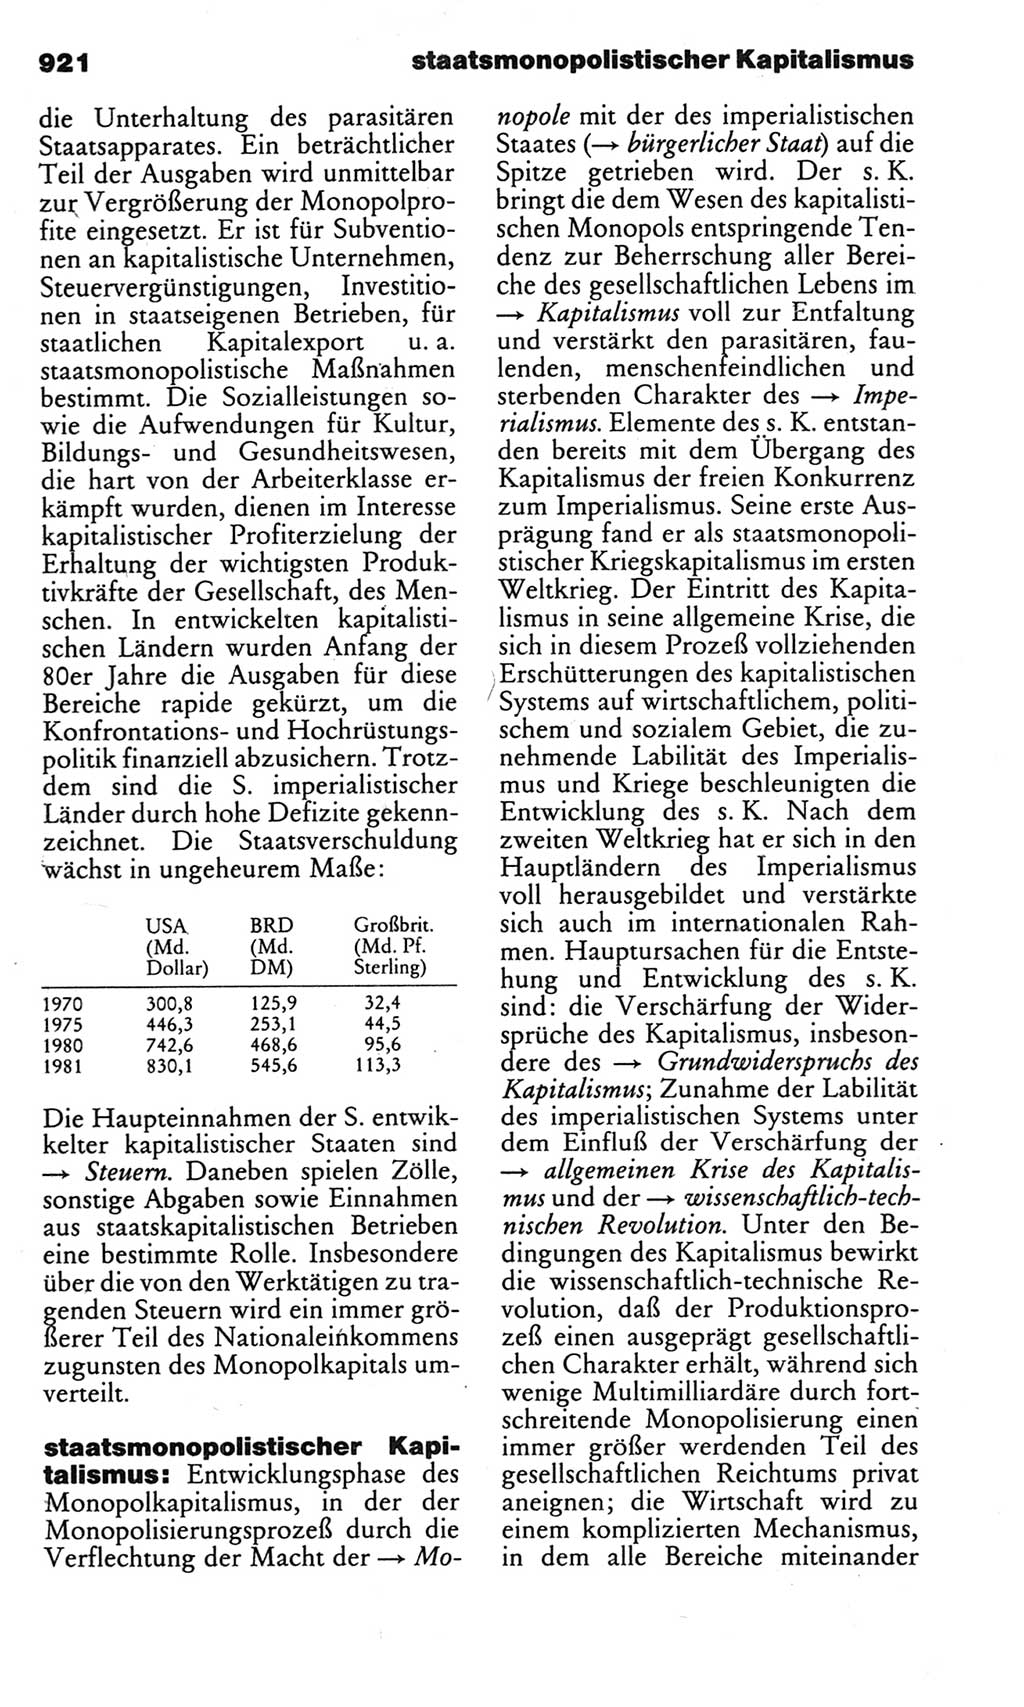 Kleines politisches Wörterbuch [Deutsche Demokratische Republik (DDR)] 1983, Seite 921 (Kl. pol. Wb. DDR 1983, S. 921)